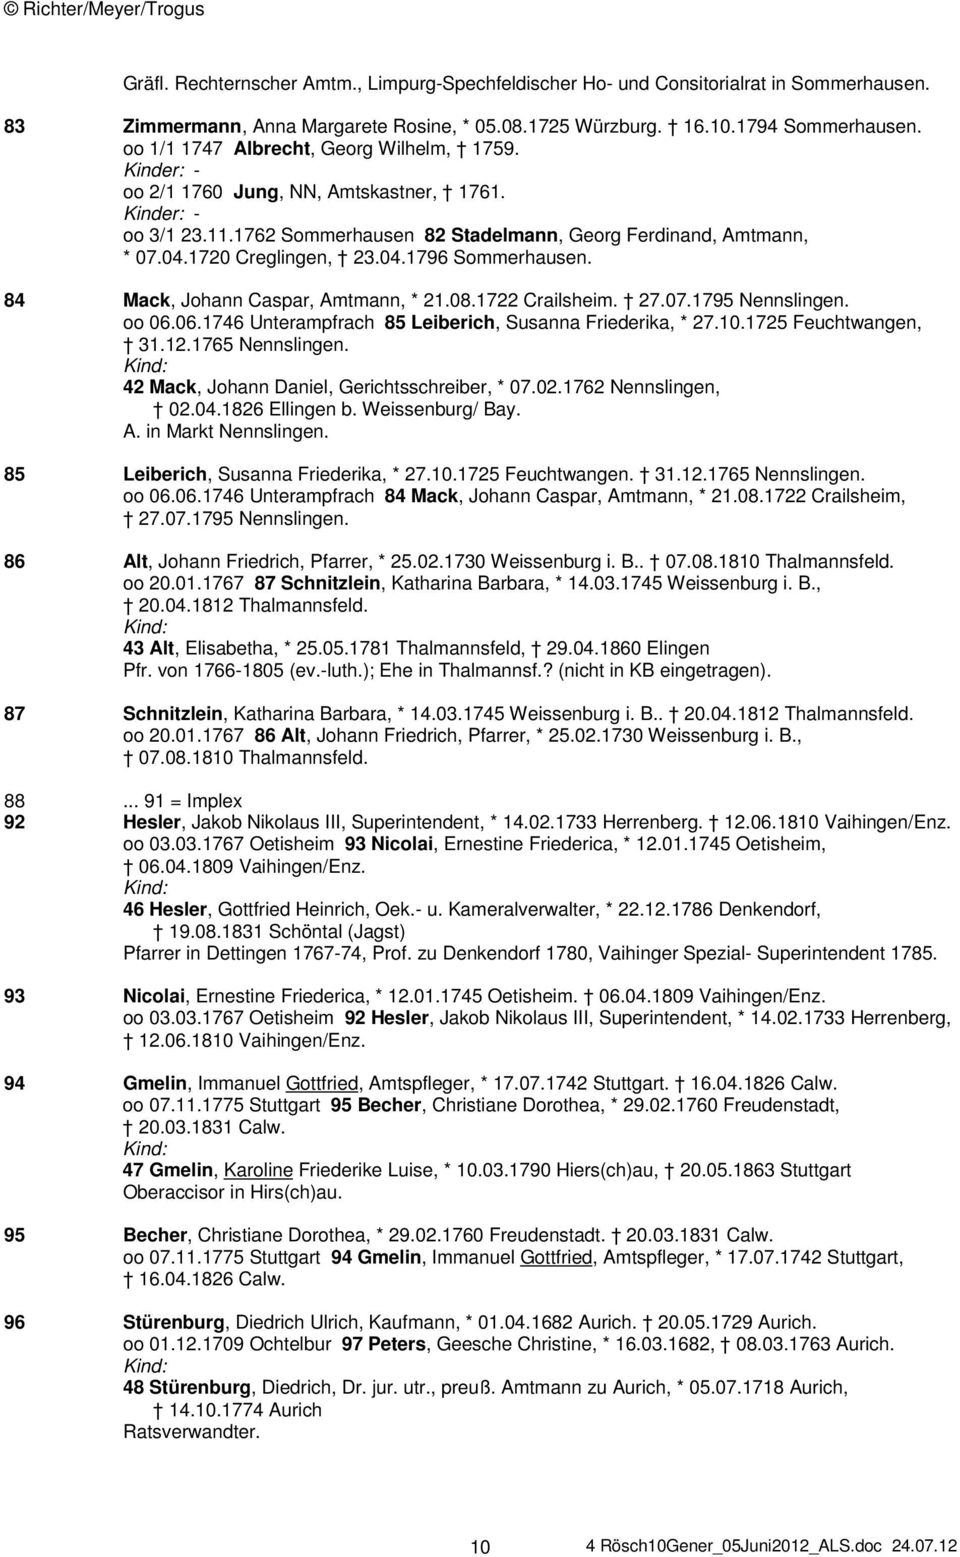 1720 Creglingen, 23.04.1796 Sommerhausen. 84 Mack, Johann Caspar, Amtmann, * 21.08.1722 Crailsheim. 27.07.1795 Nennslingen. oo 06.06.1746 Unterampfrach 85 Leiberich, Susanna Friederika, * 27.10.